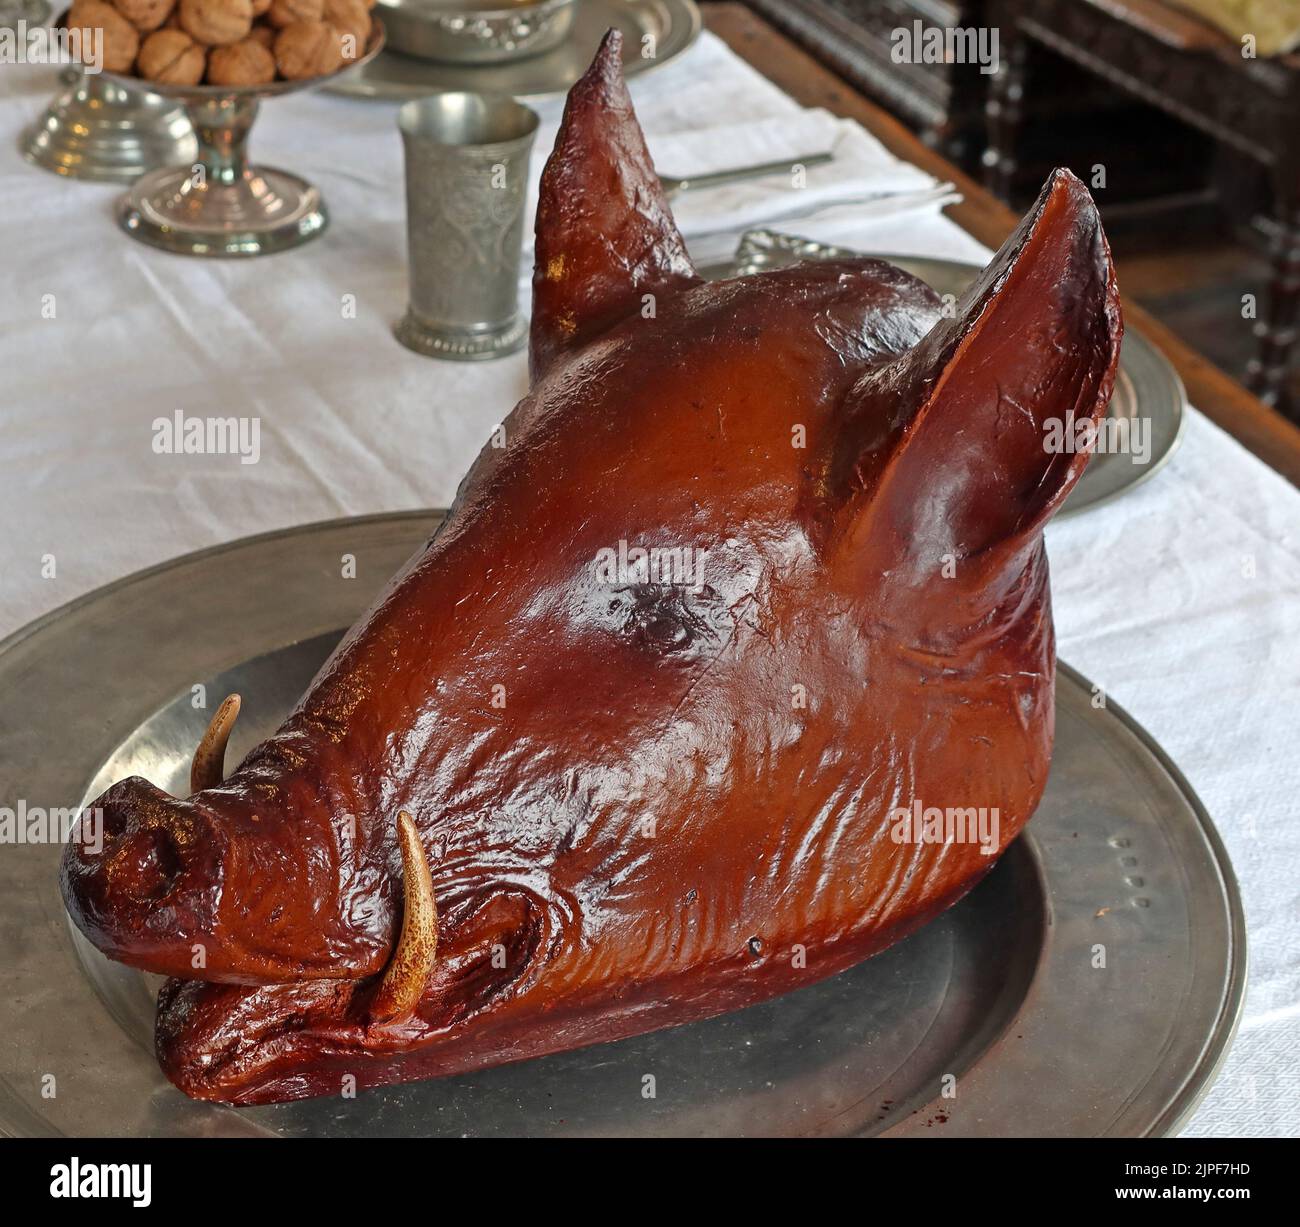 Une tête de cochons rôtis cuits, sur une assiette de étain Banque D'Images